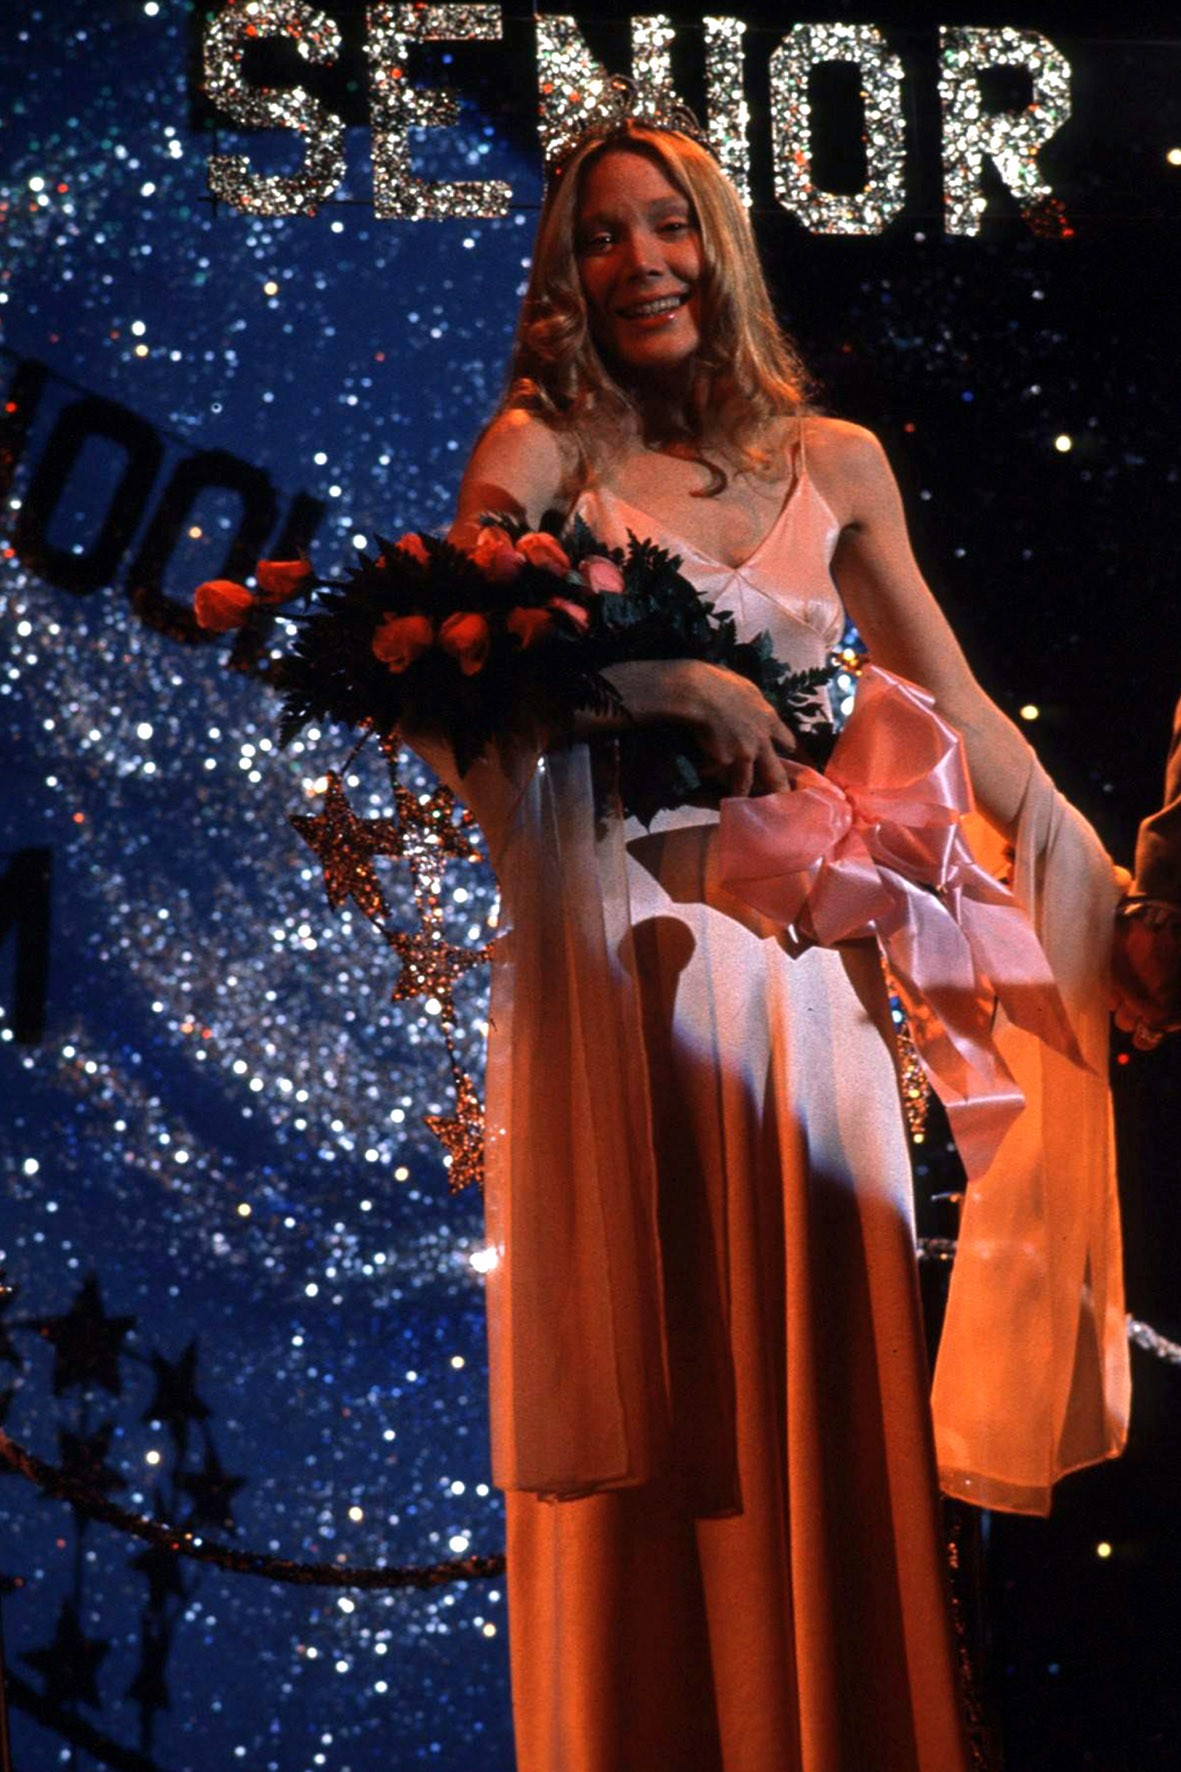 Image du film Carrie au bal du diable 8737036a-5470-4d28-a016-dcb8679354e1